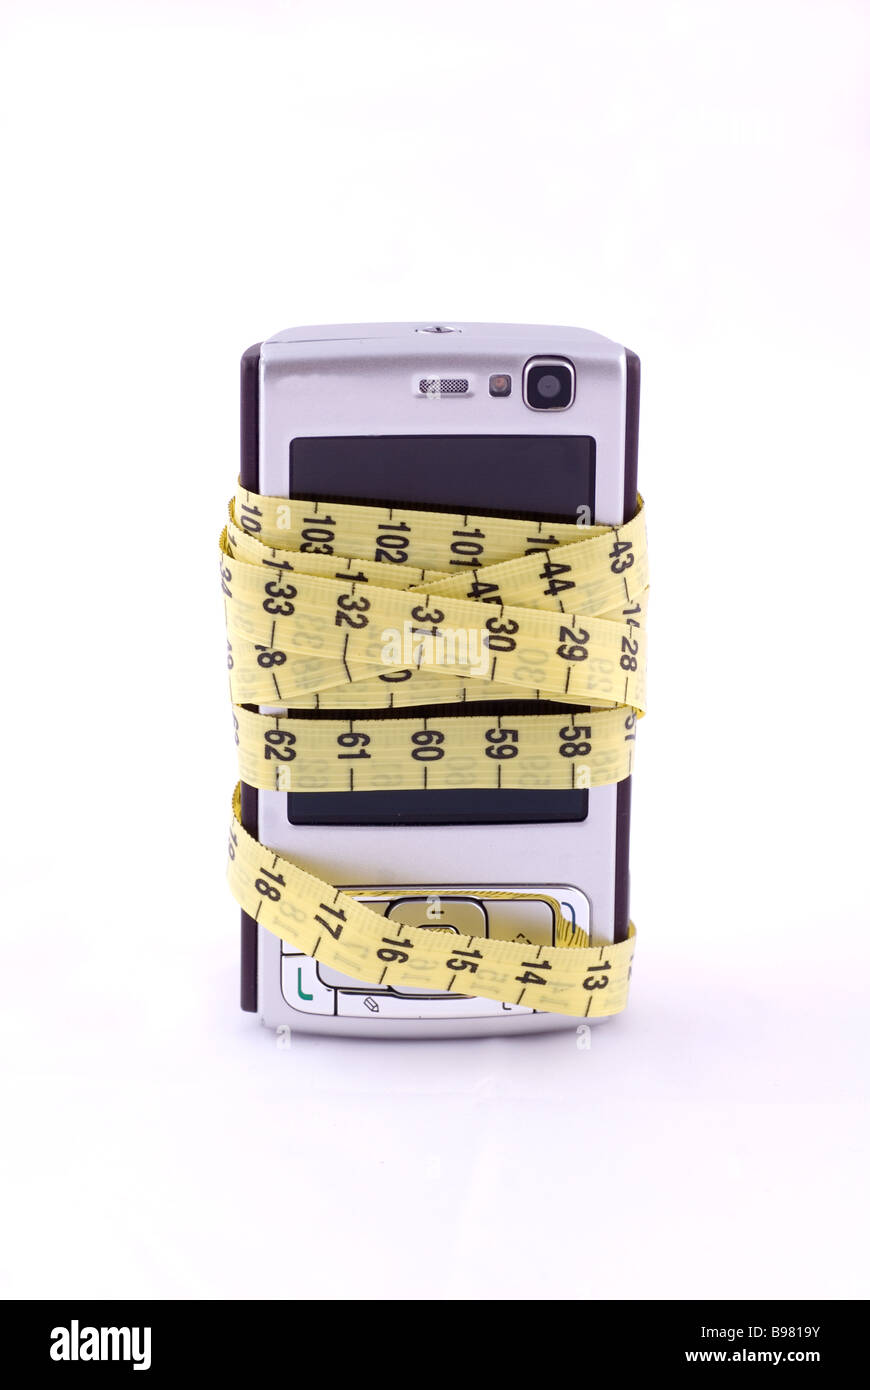 Téléphone mobile enveloppé de ruban de mesure isolé sur fond blanc Banque D'Images